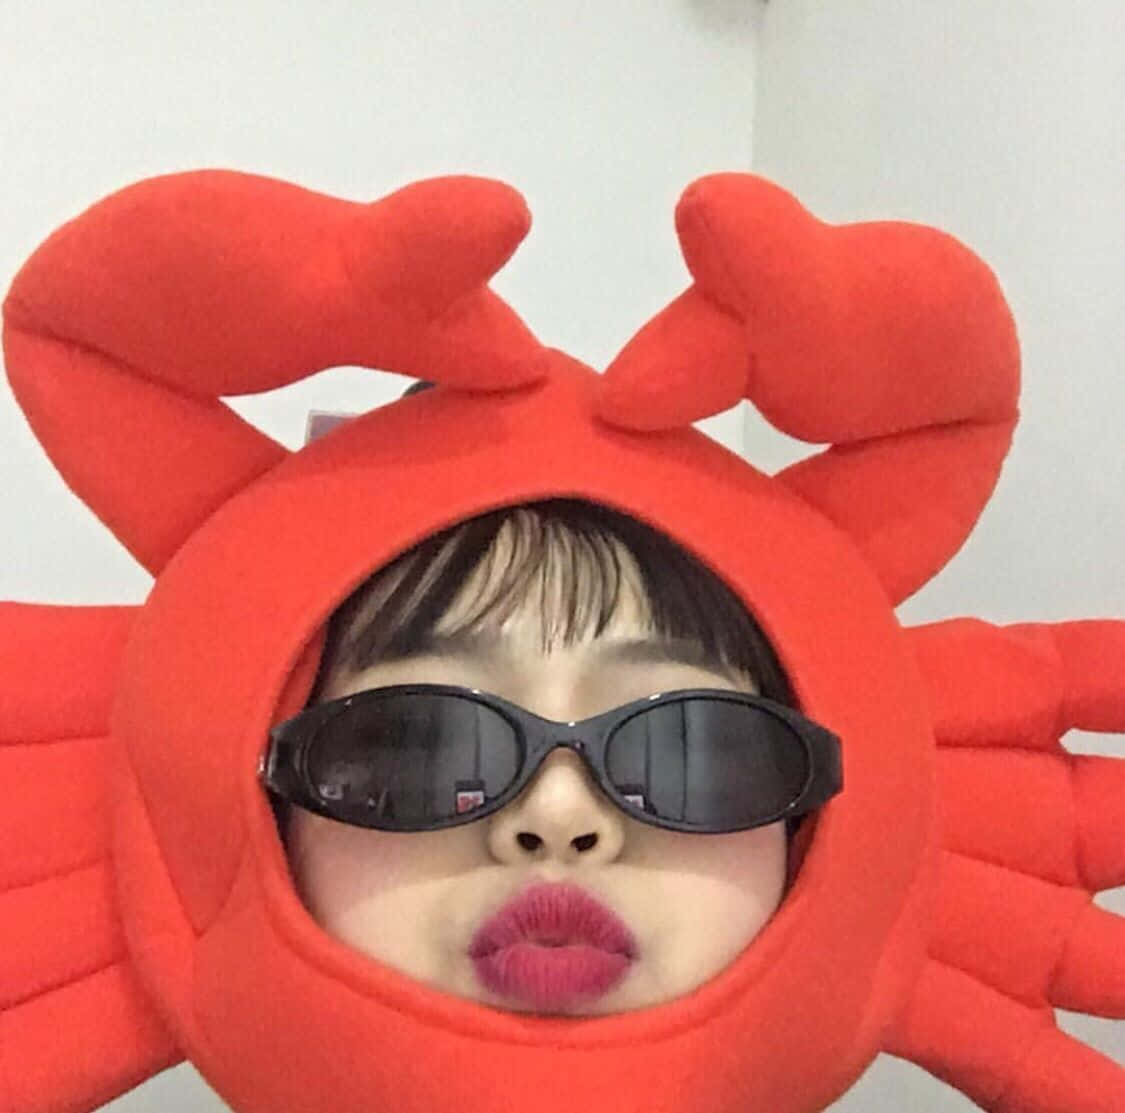 Einmädchen Trägt Ein Krabbenkostüm Mit Sonnenbrille.